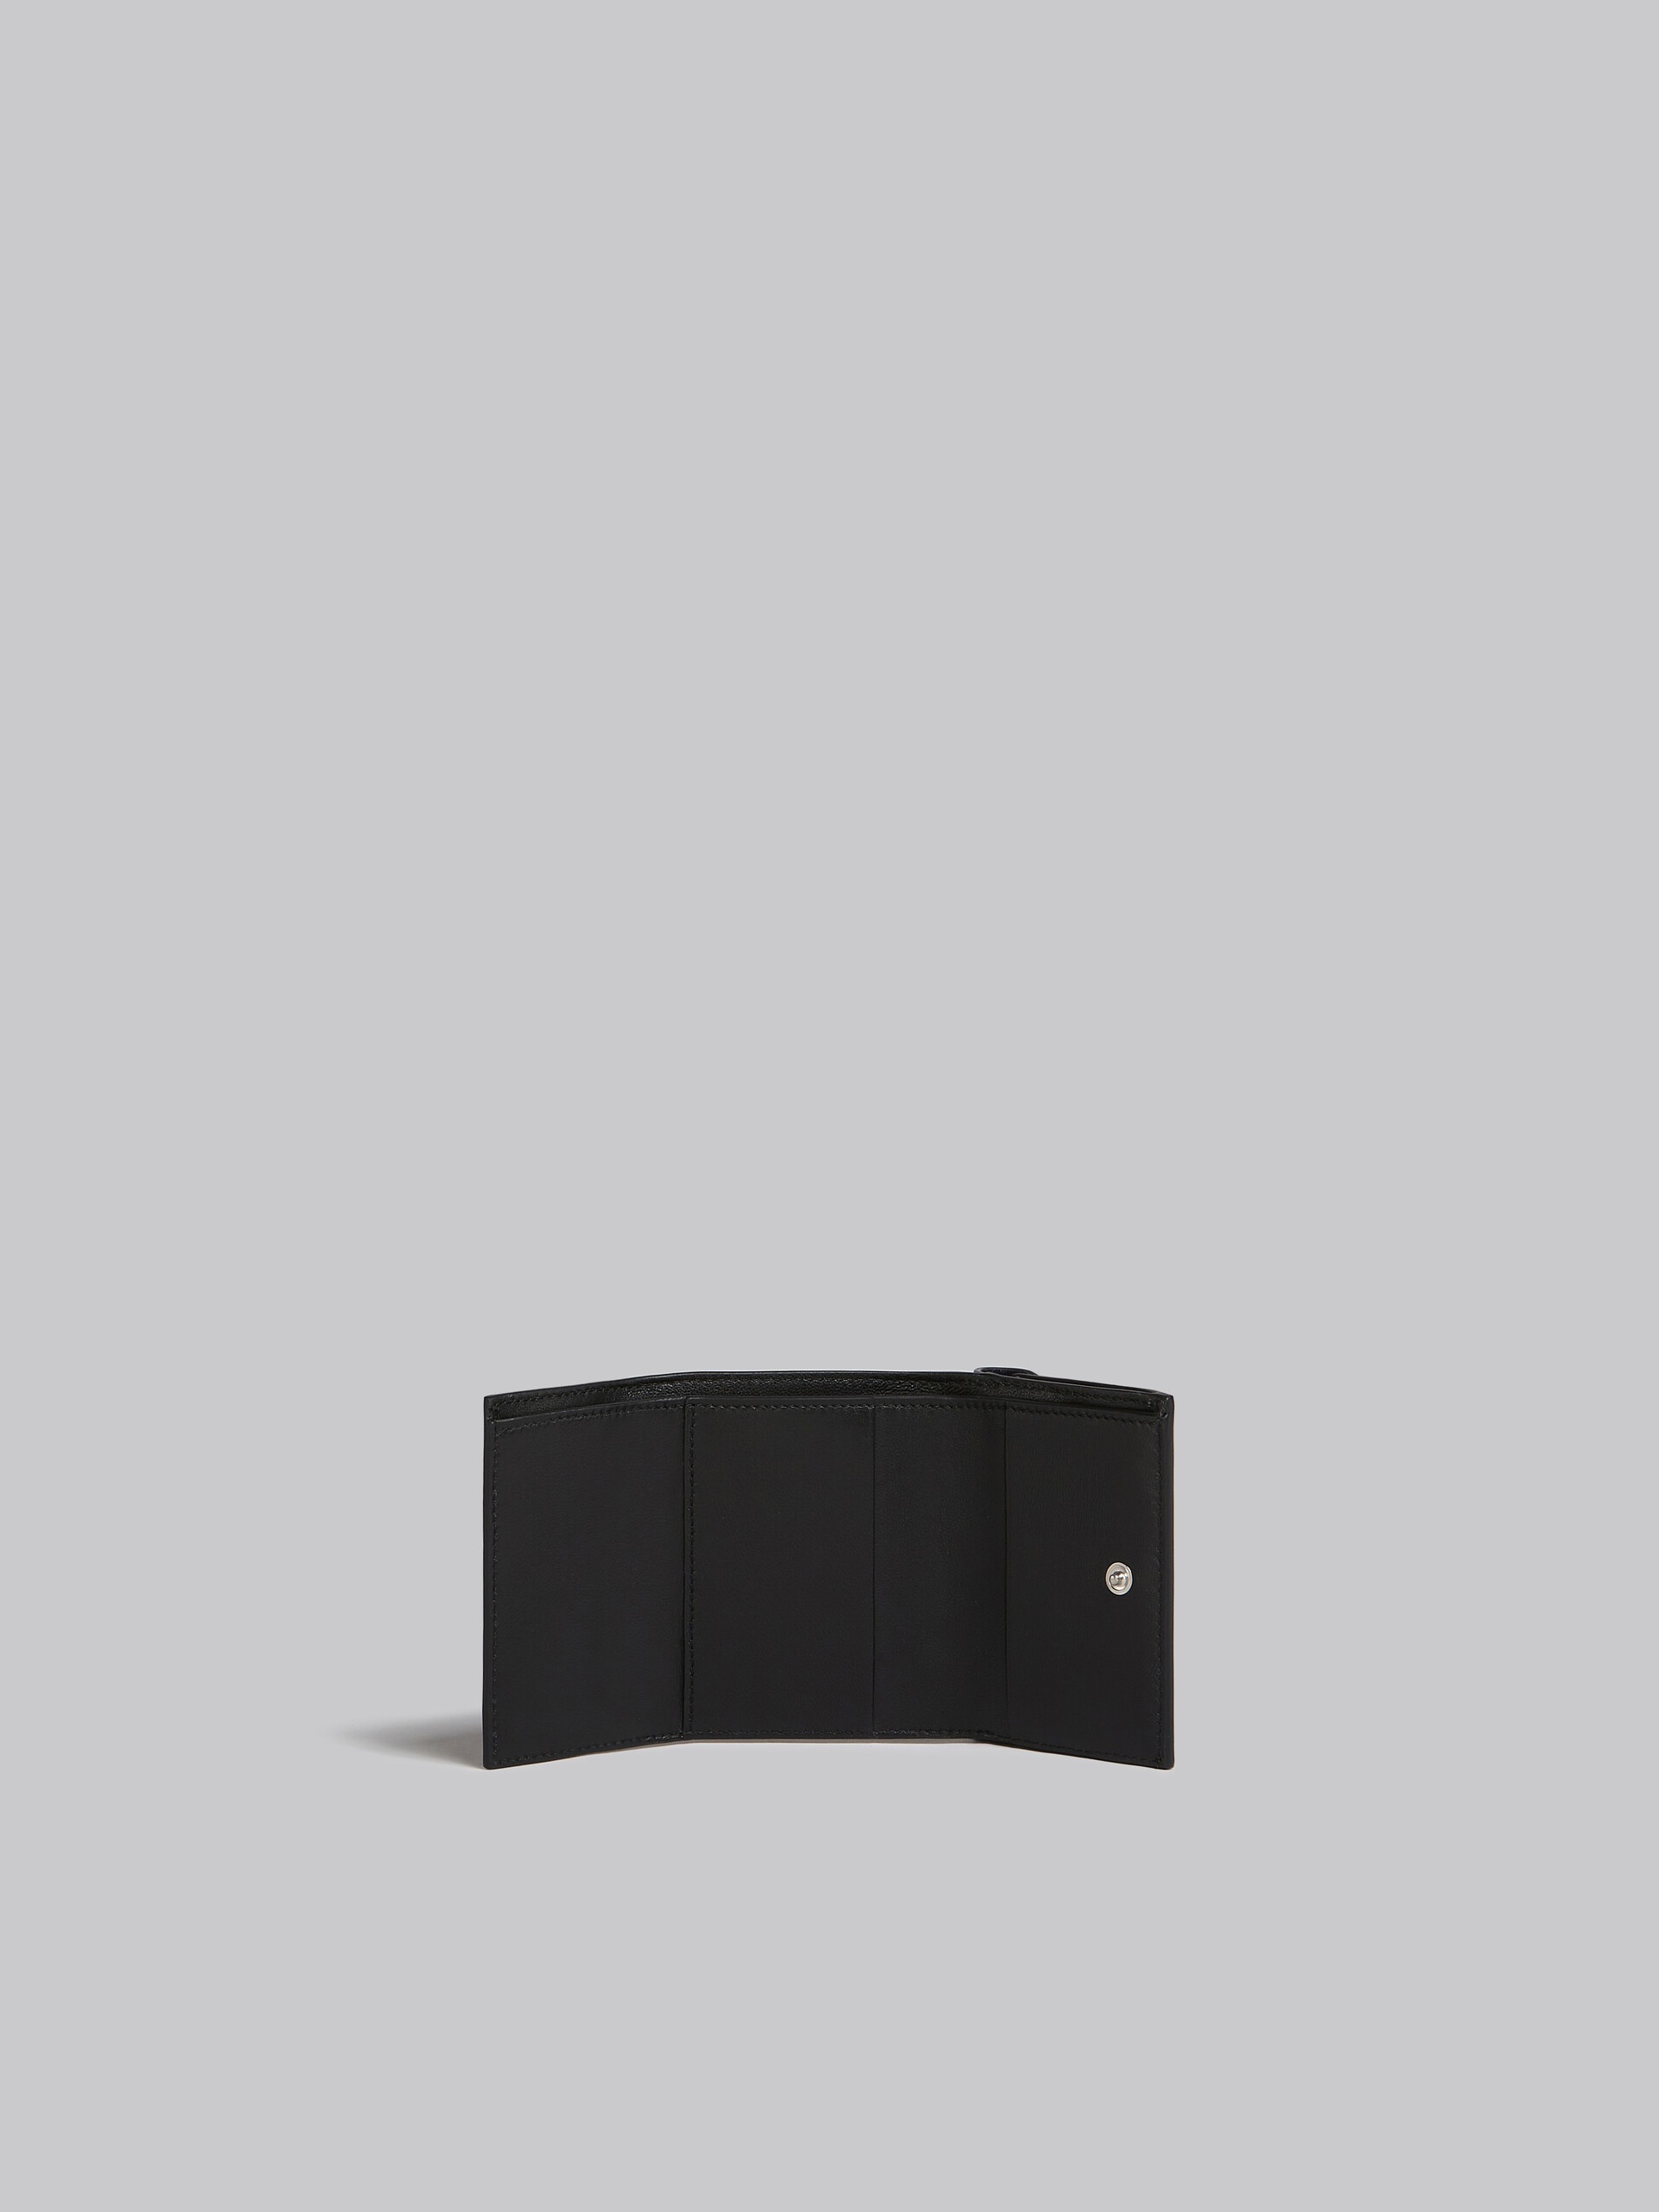 Portafoglio tri-fold in pelle blu e nera - Portafogli - Image 2